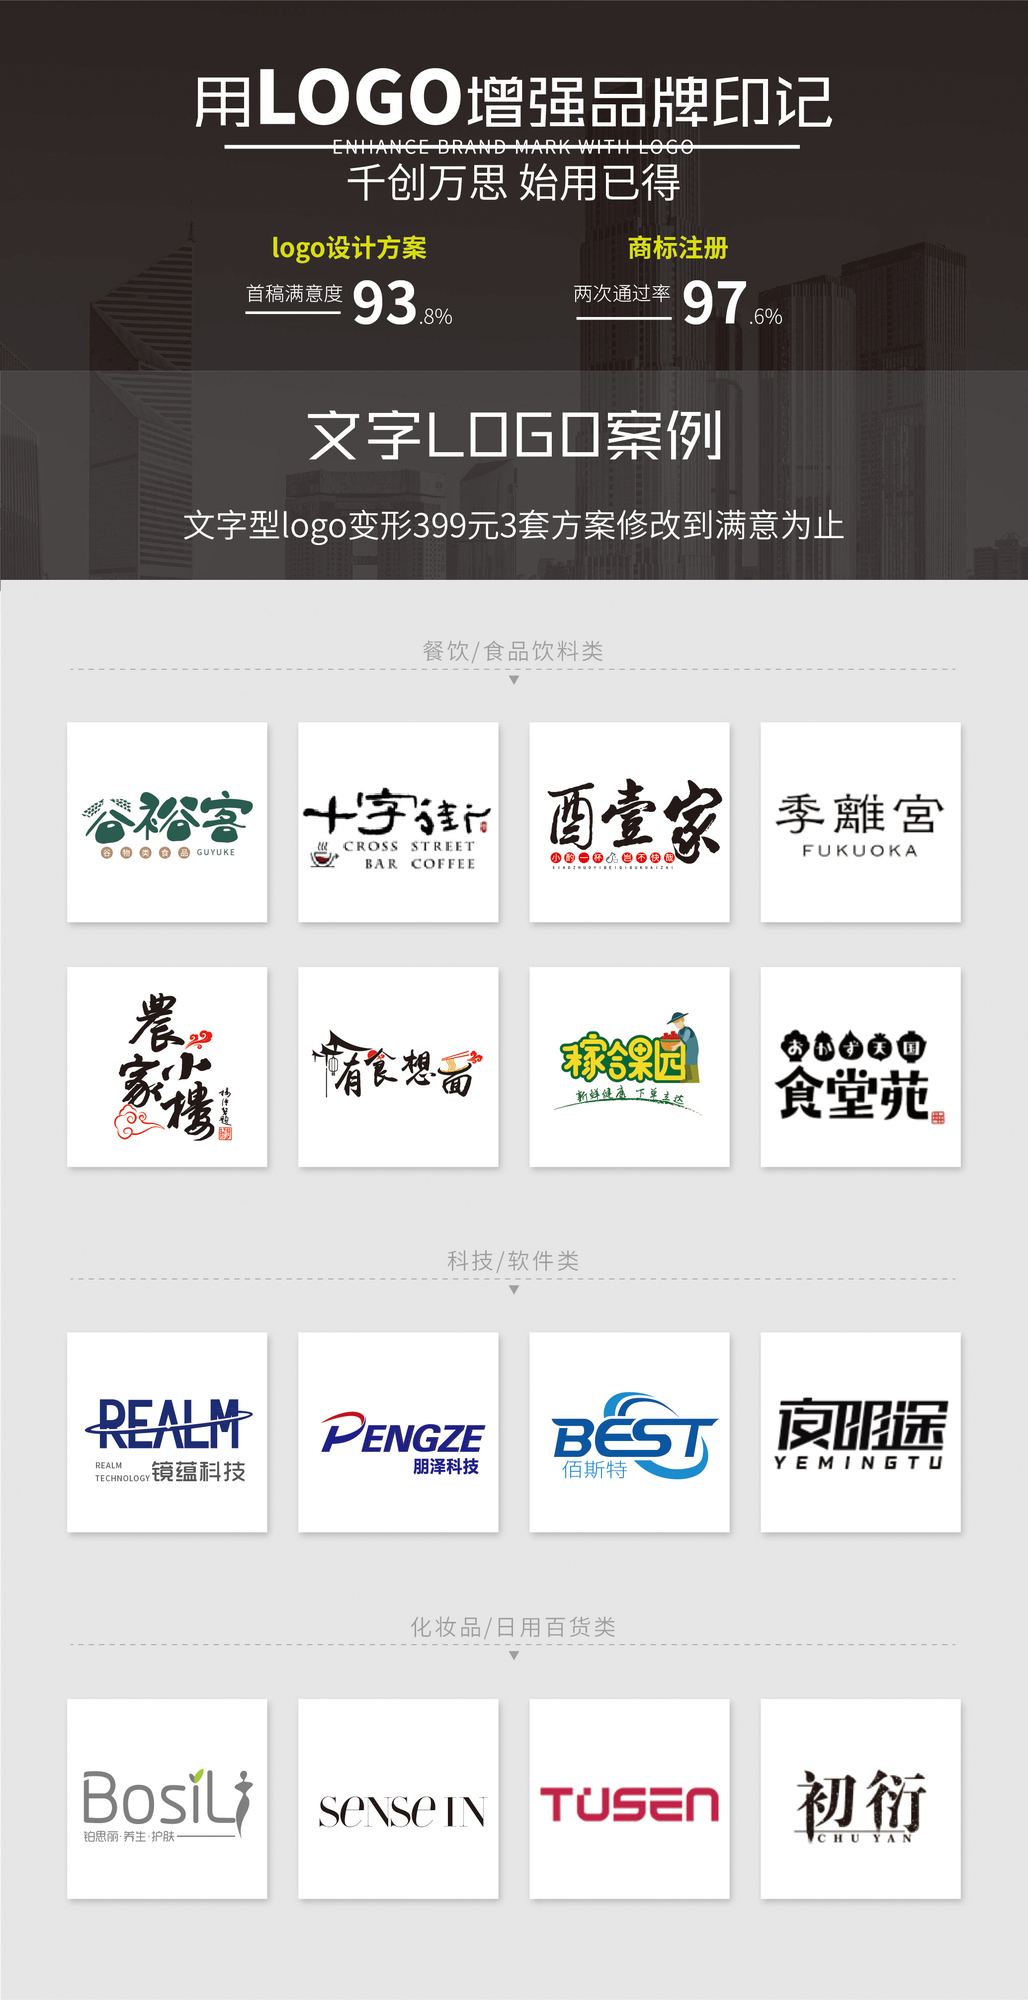 02-2020年-印客广告-logo设计案例_页面_1.jpg